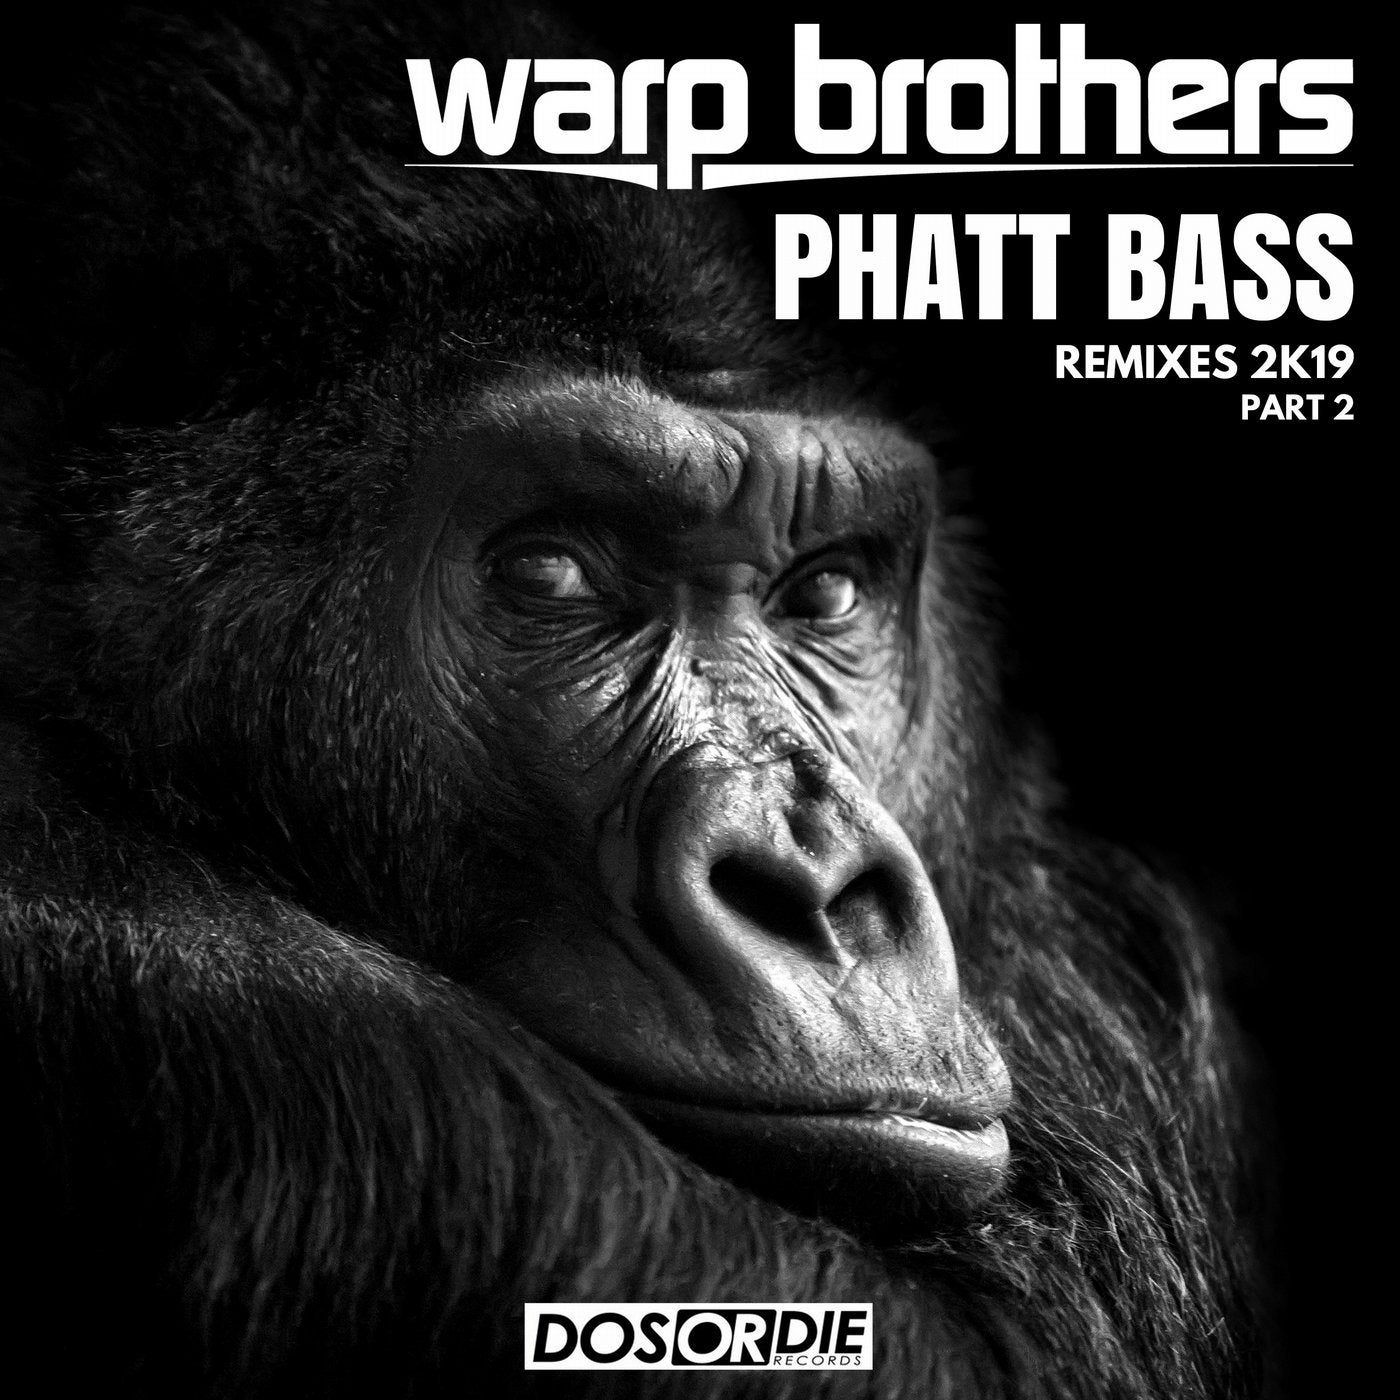 Phatt Bass Remixes, Pt. 2